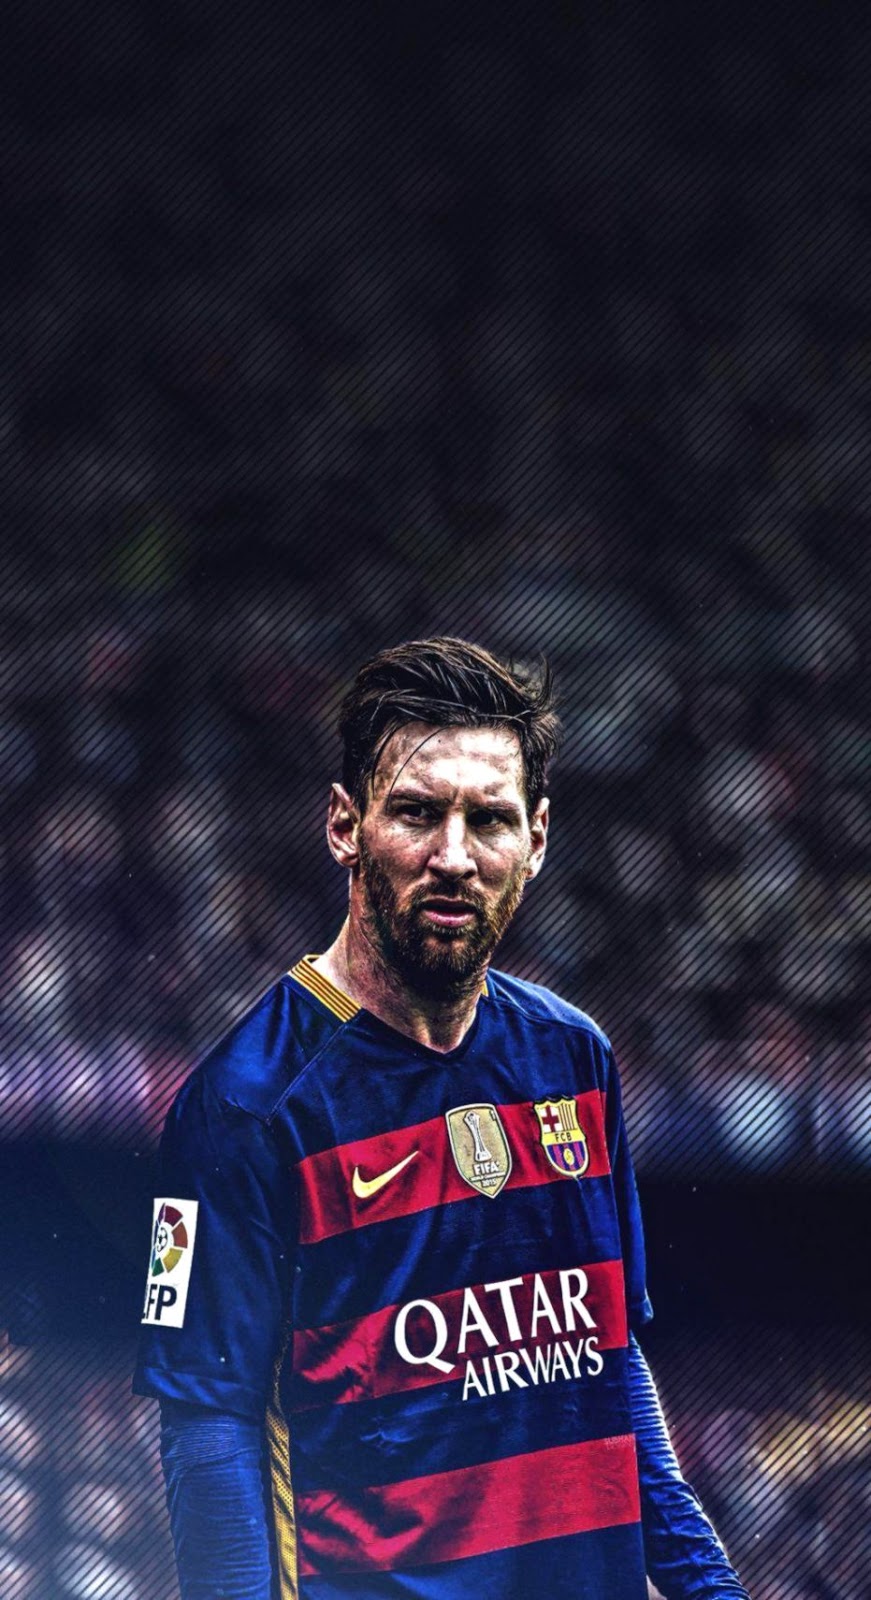 Bức ảnh nền Messi là một trong những tác phẩm nghệ thuật đẹp nhất về cầu thủ này. Với khả năng đi bóng tài tình và kỹ thuật đỉnh cao, Messi đang là niềm tự hào của Argentina cũng như các fan hâm mộ trên toàn thế giới. Hãy xem và cảm nhận những giá trị này qua bức ảnh này.